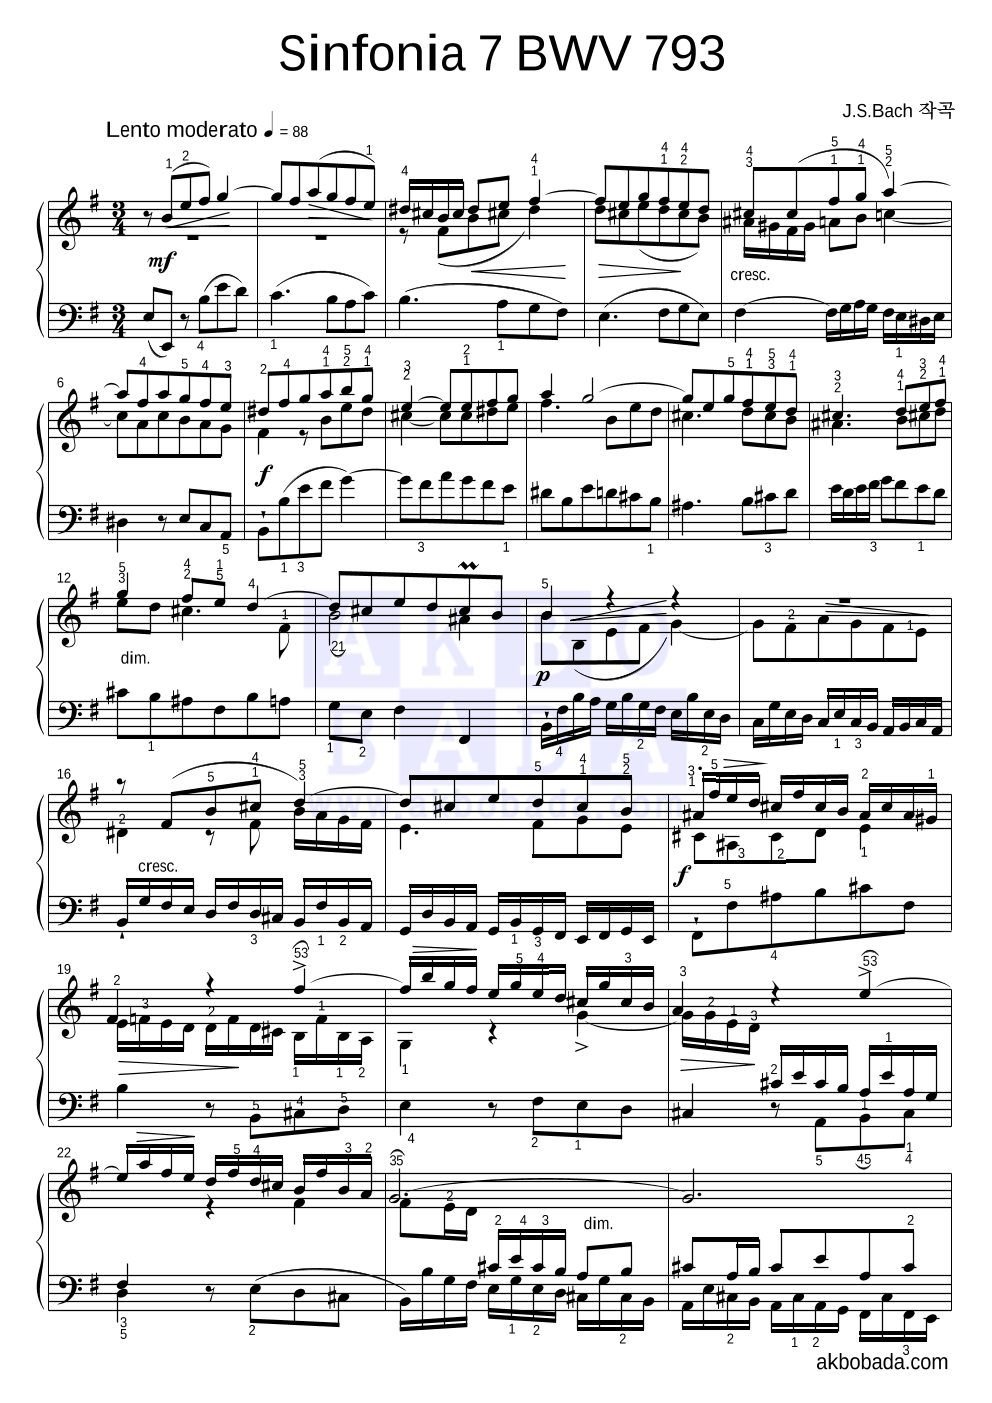 바흐 - Sinfonia 7 BWV 793 피아노 2단 악보 